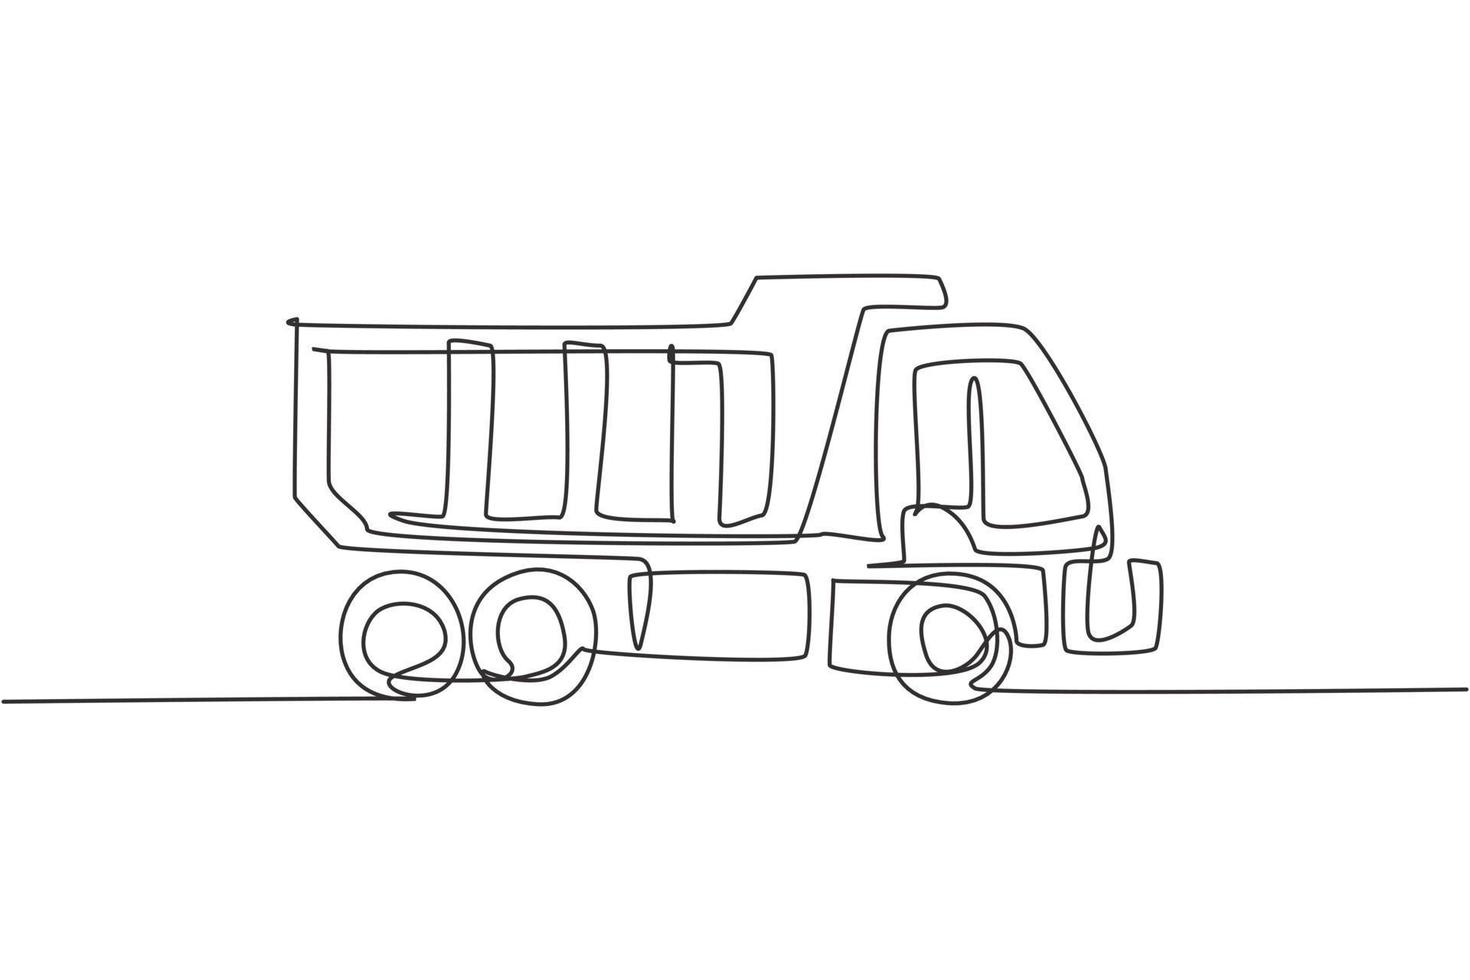 un dibujo de línea continua de un camión largo para entrega logística de carga, vehículo comercial. concepto de equipo de camiones de transporte pesado. Ilustración gráfica de vector de diseño de dibujo de línea única dinámica